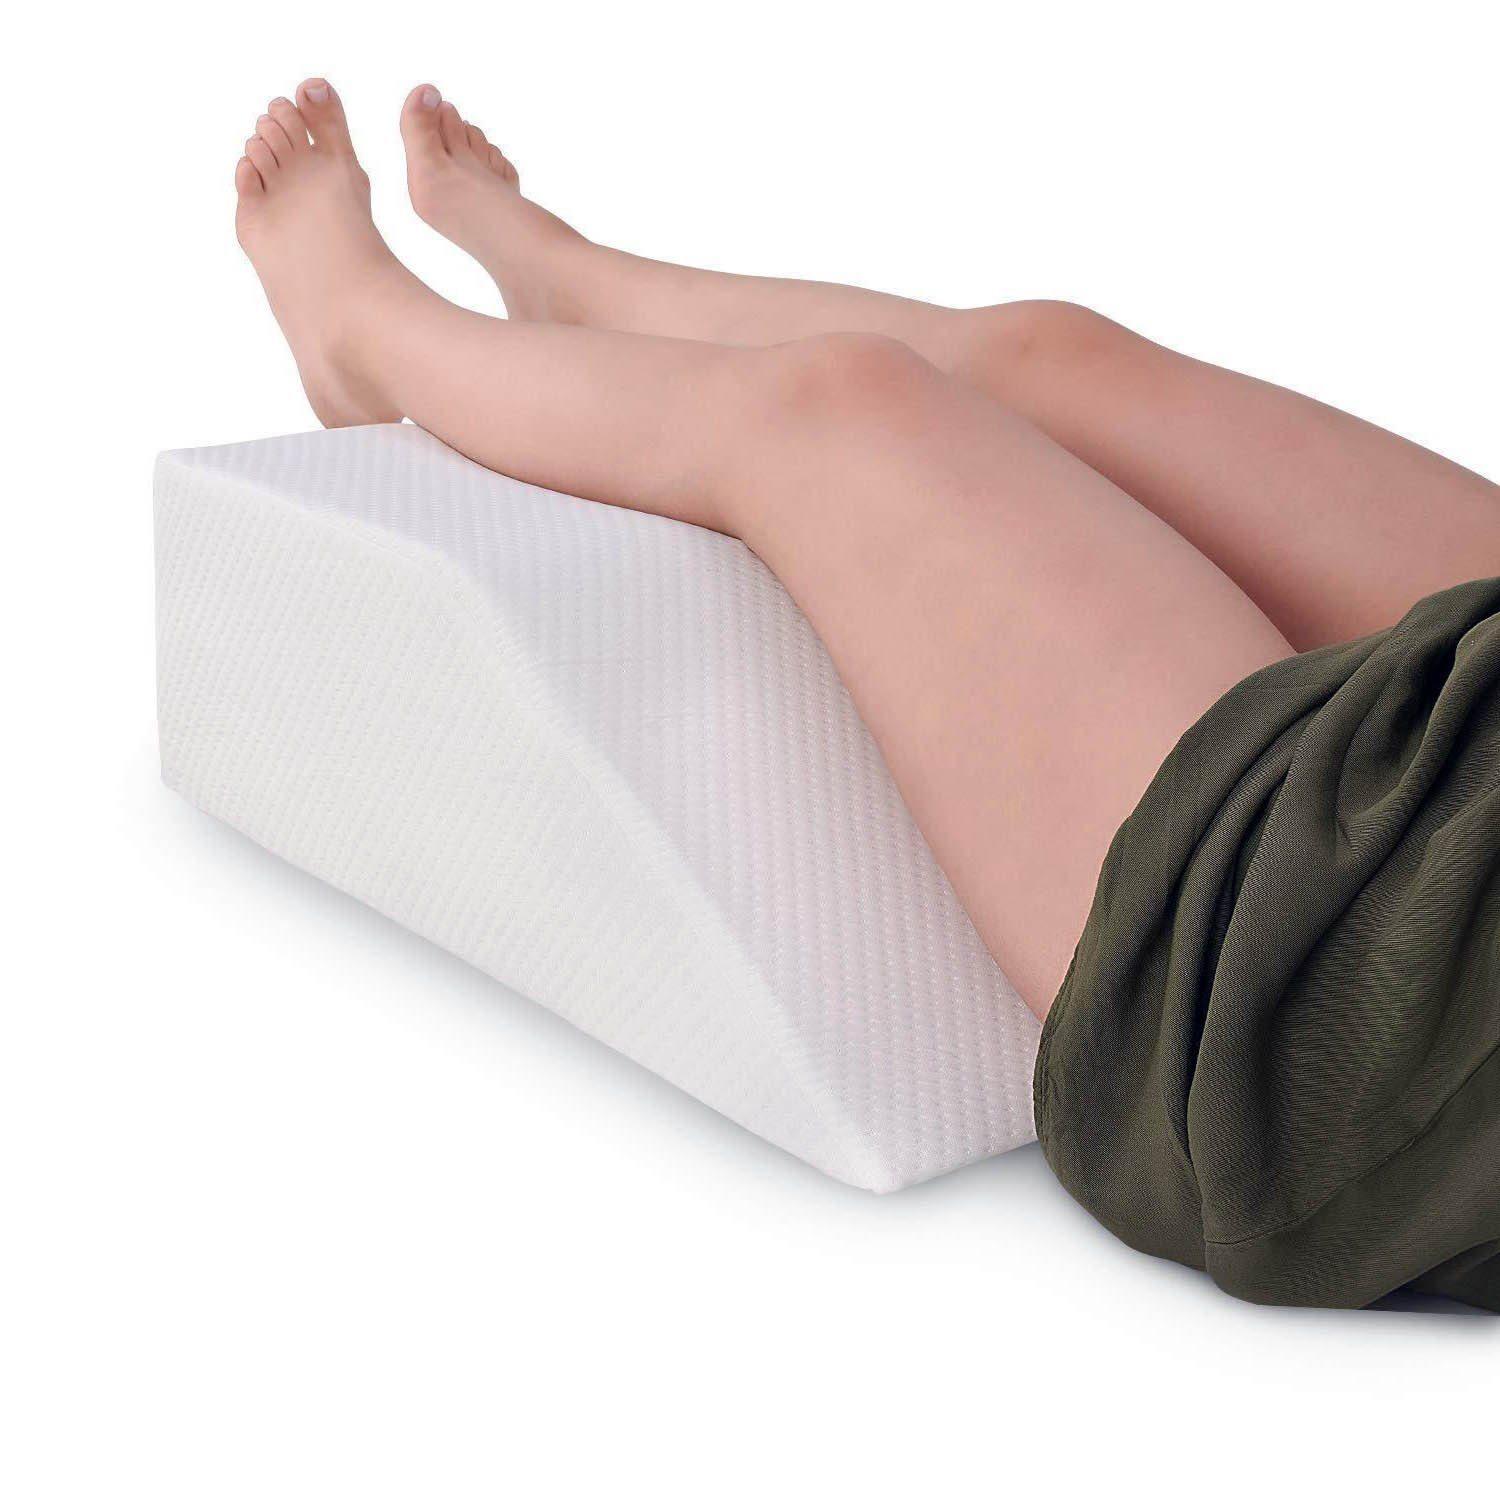 http://www.kneepillow.co.uk/cdn/shop/products/elevating-leg-rest-pillow-pillow.jpg?v=1680128171